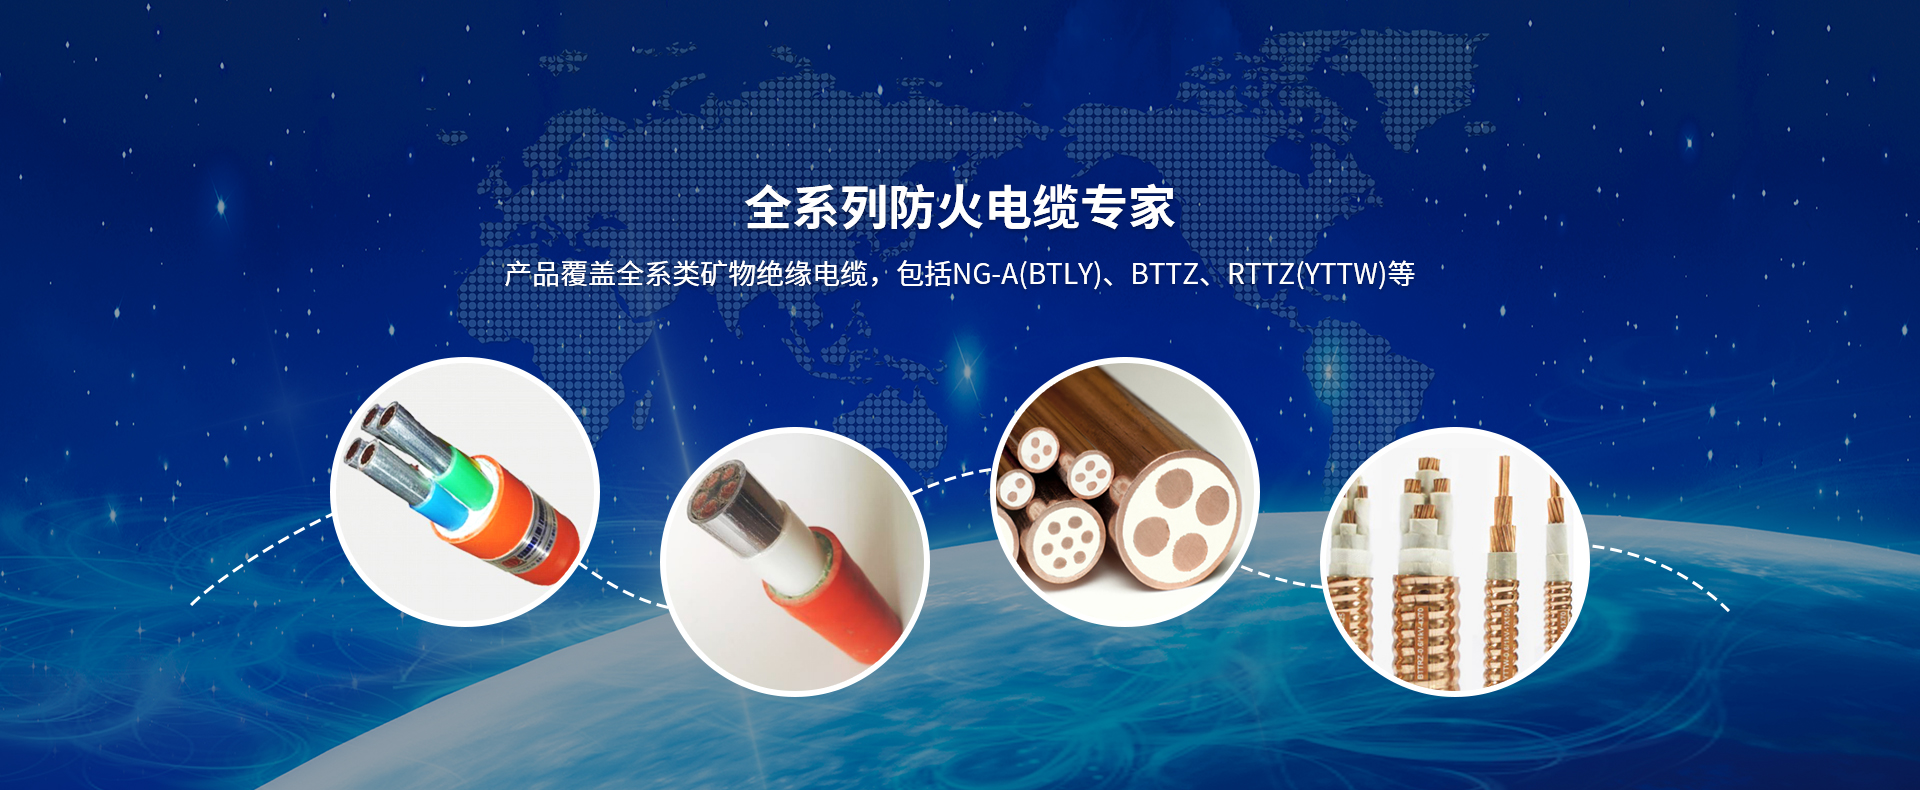 关于当前产品26888开元棋官方·(中国)官方网站的成功案例等相关图片